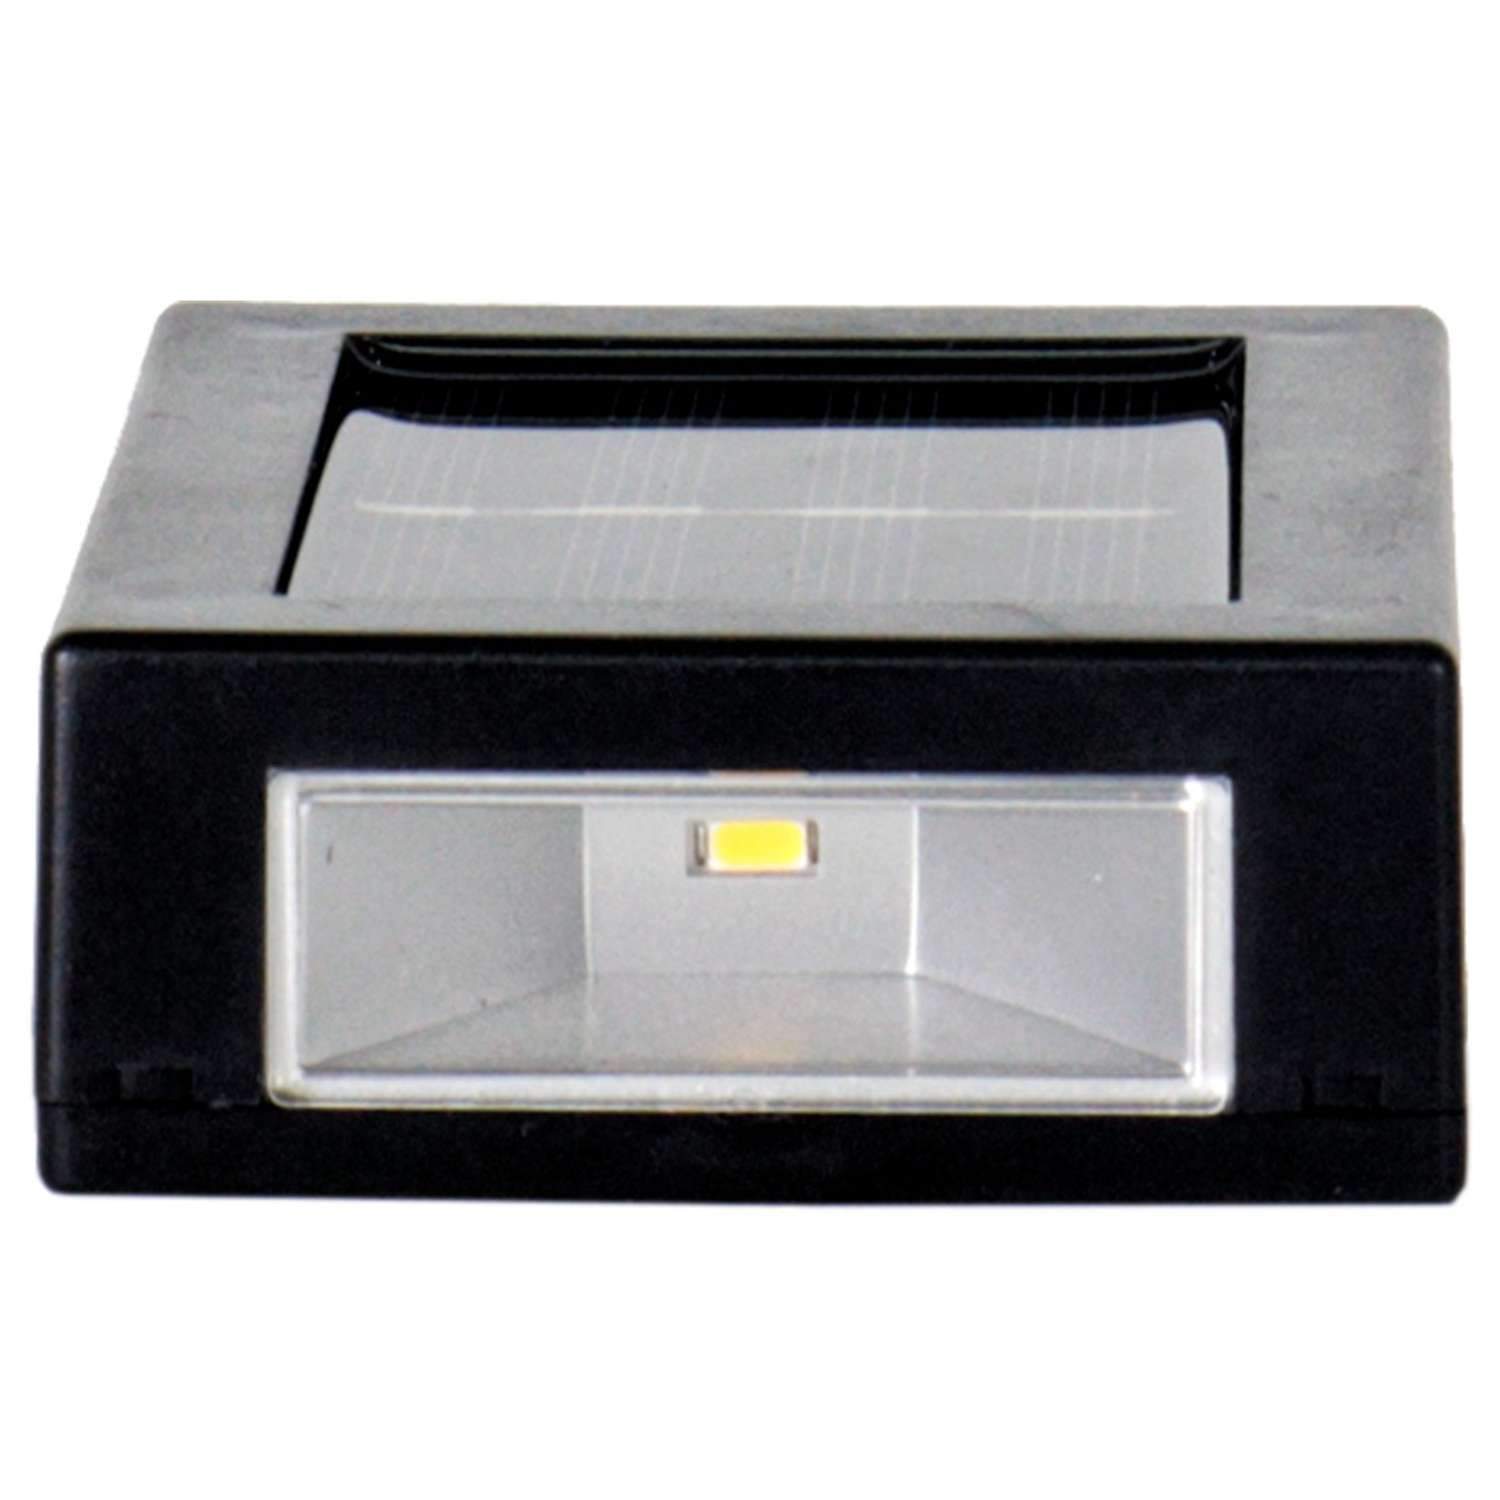 Светодиодный светильник GLANZEN RPD-0003-1-solar-2pcs на солнечных батареях 2 шт - фото 6